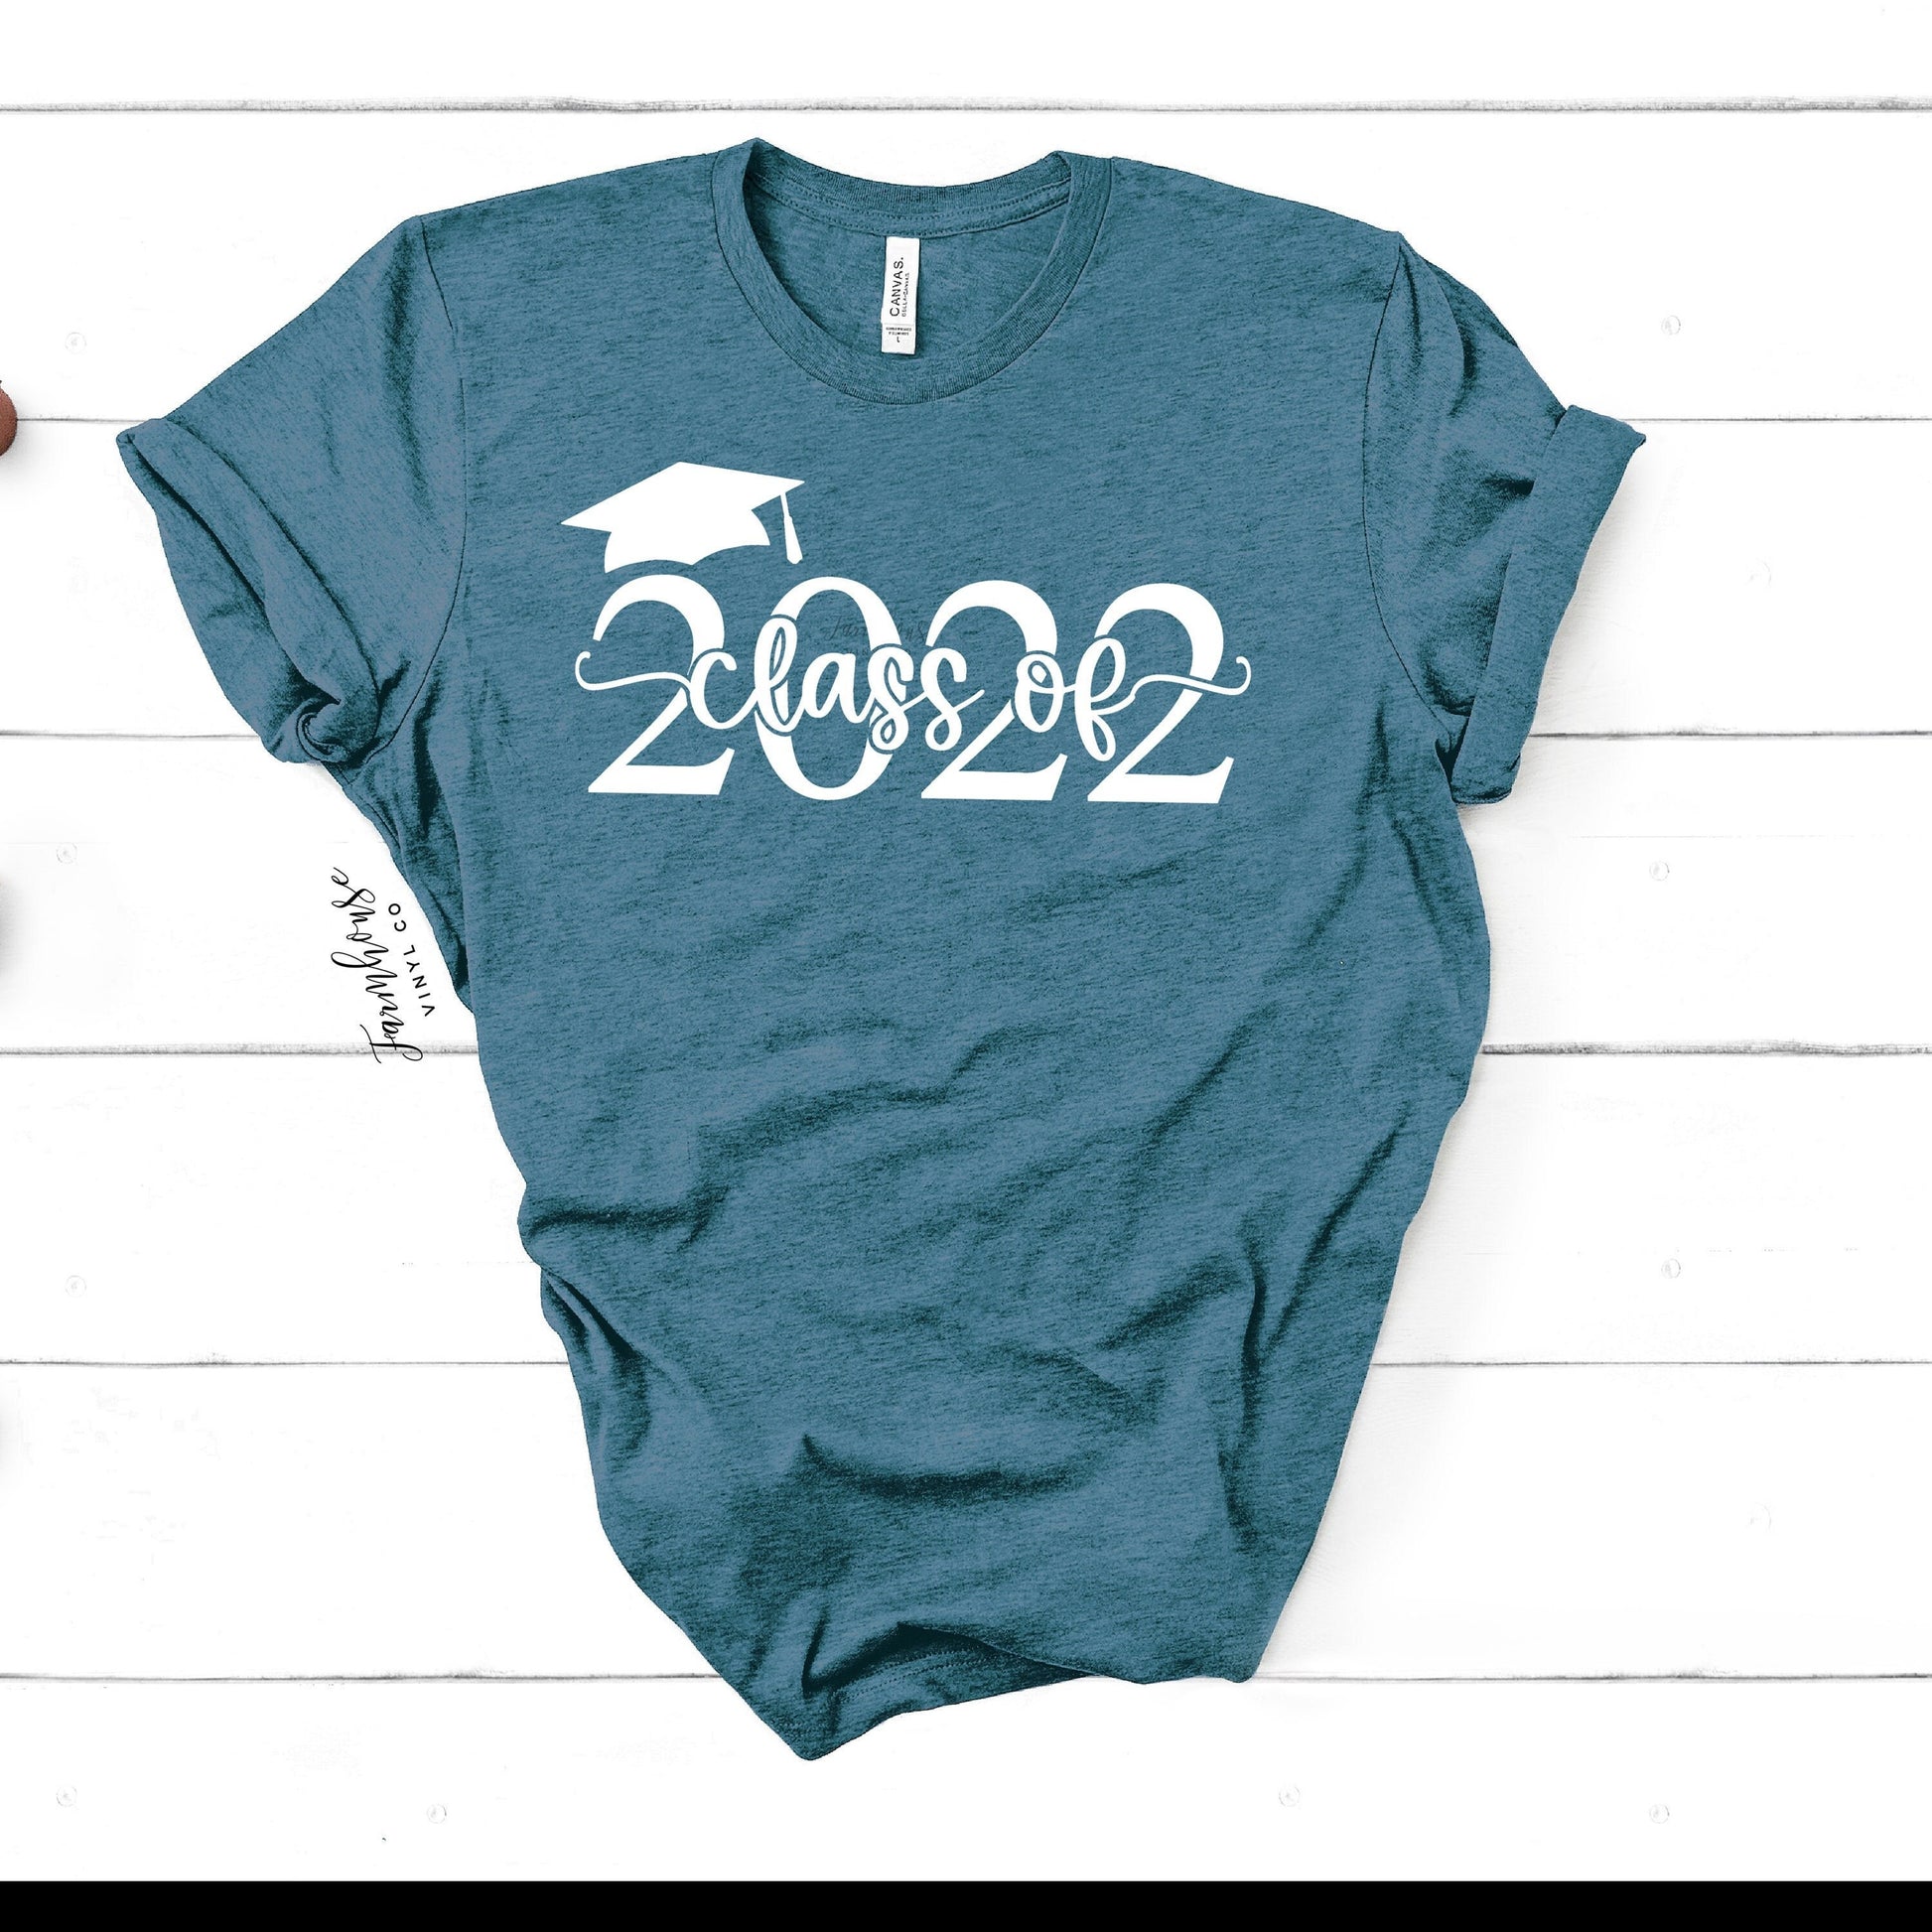 class of 2022 t shirt ideas